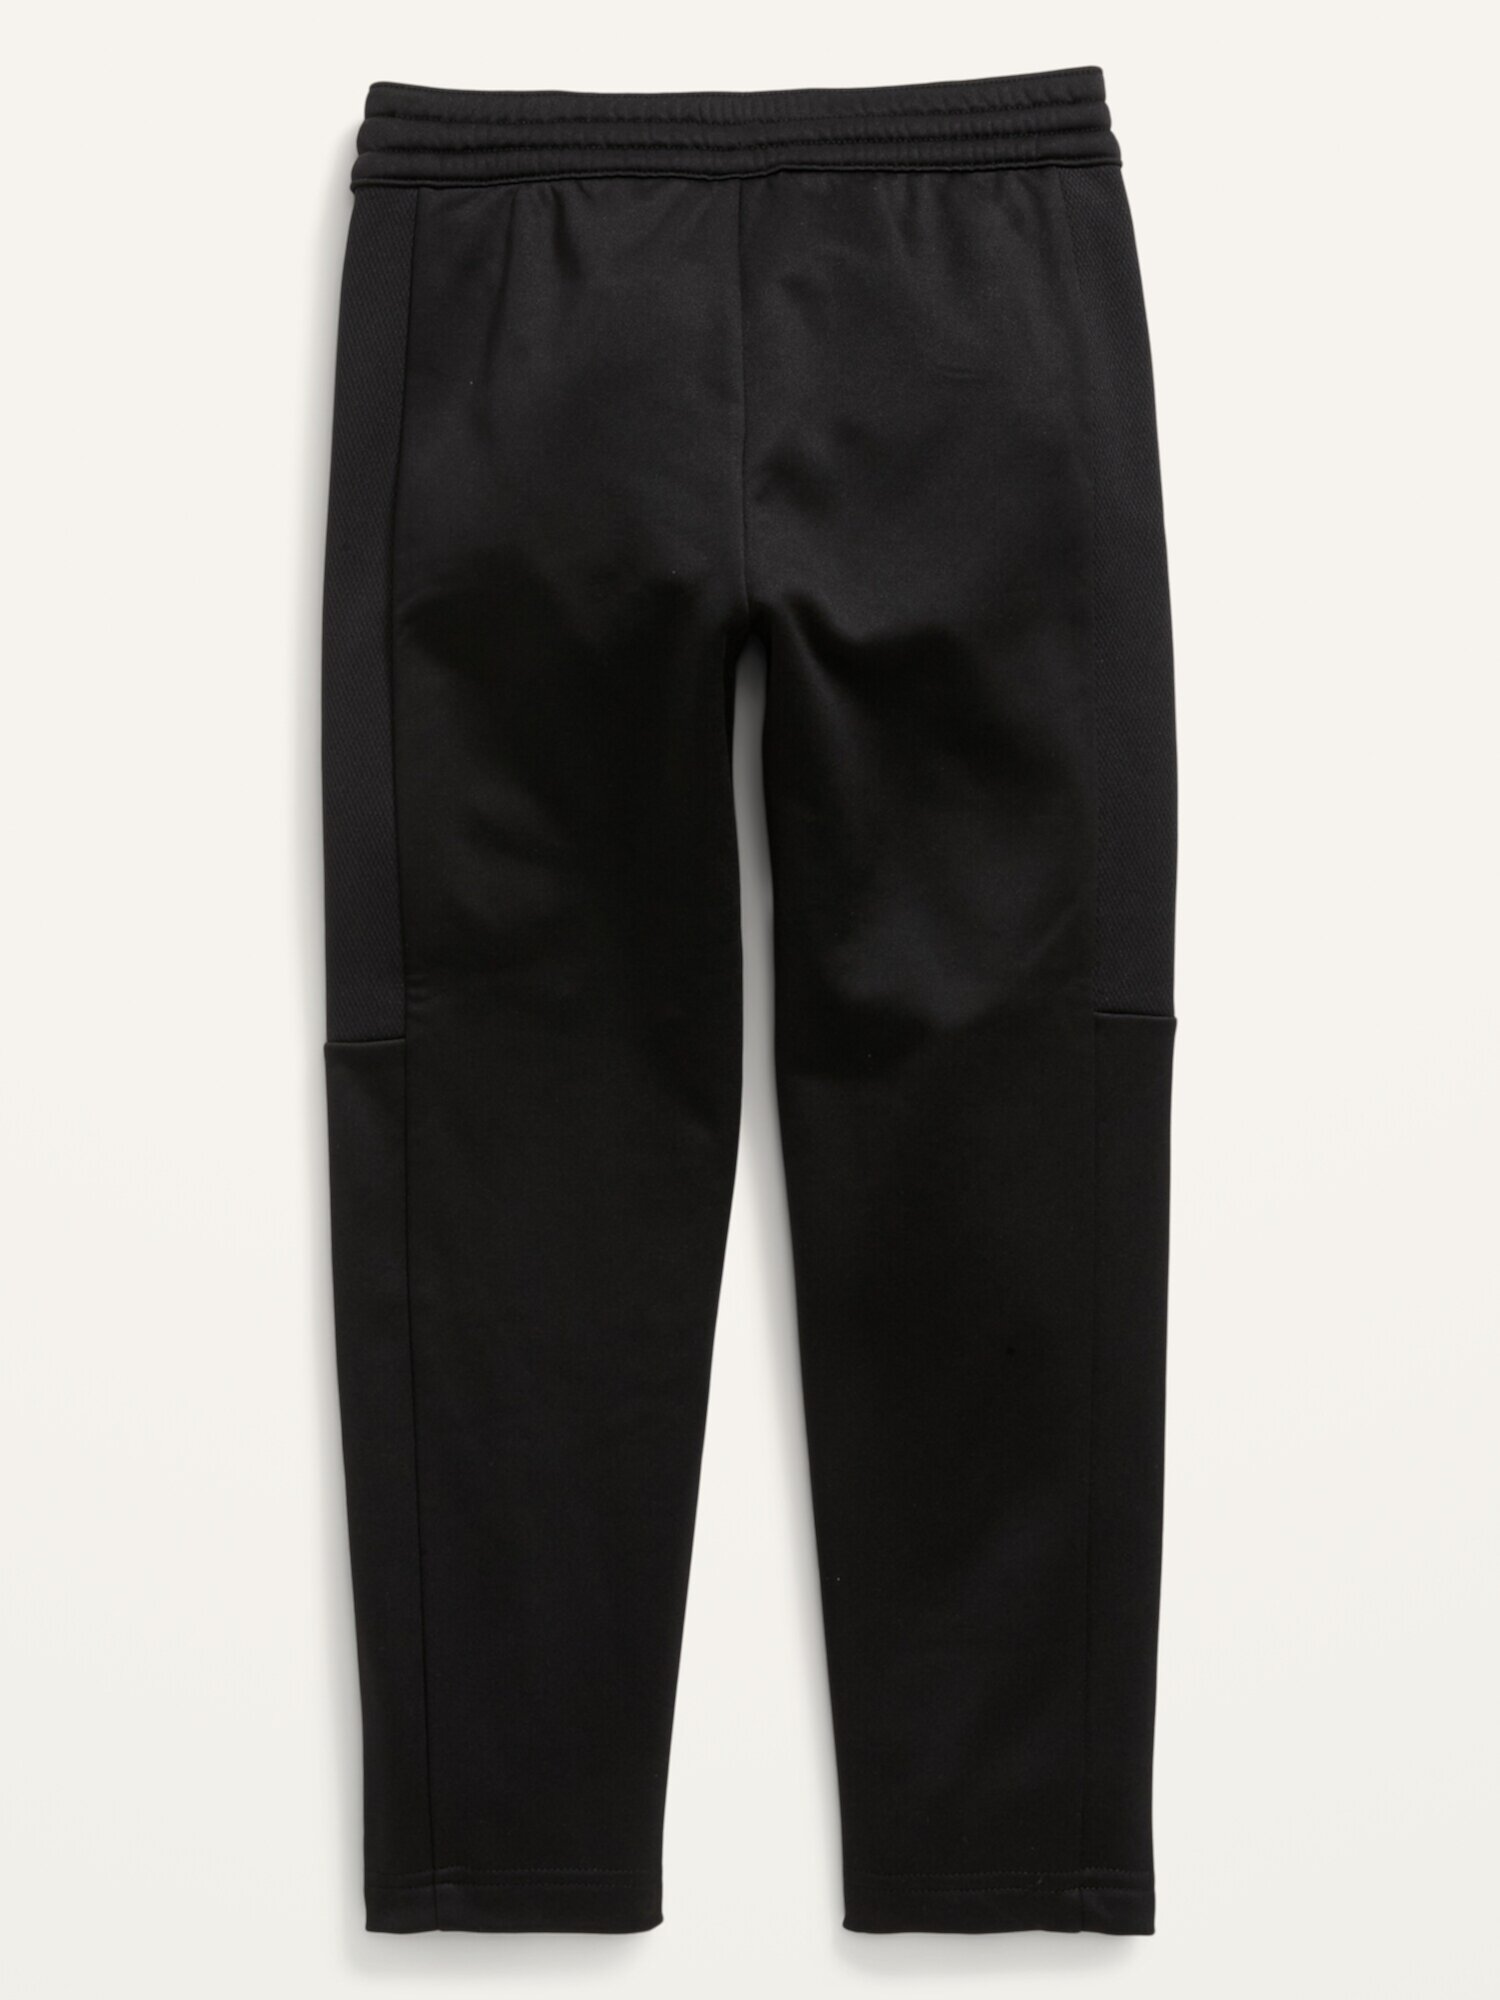 Зауженные спортивные брюки Tech Fleece для мальчиков Old Navy